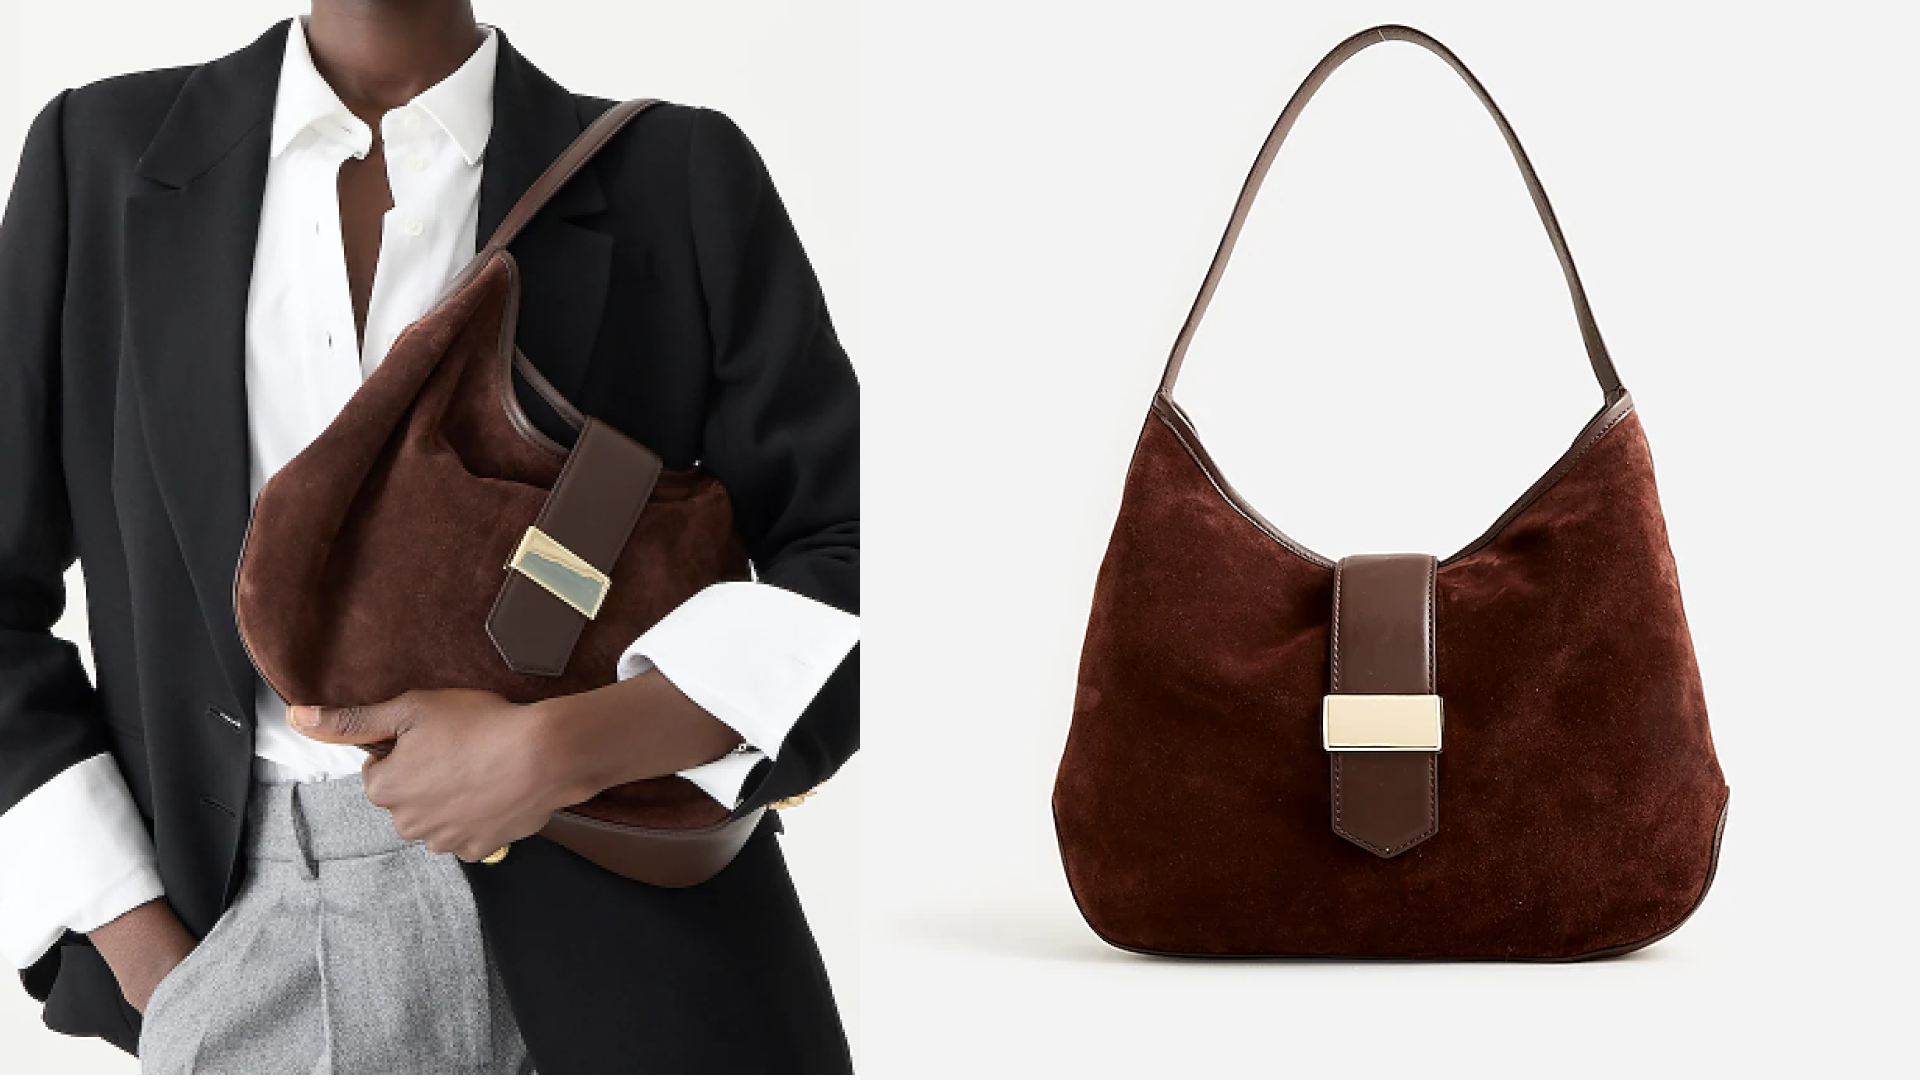 Trendiest Ways to Wear Your Crossbody Bag